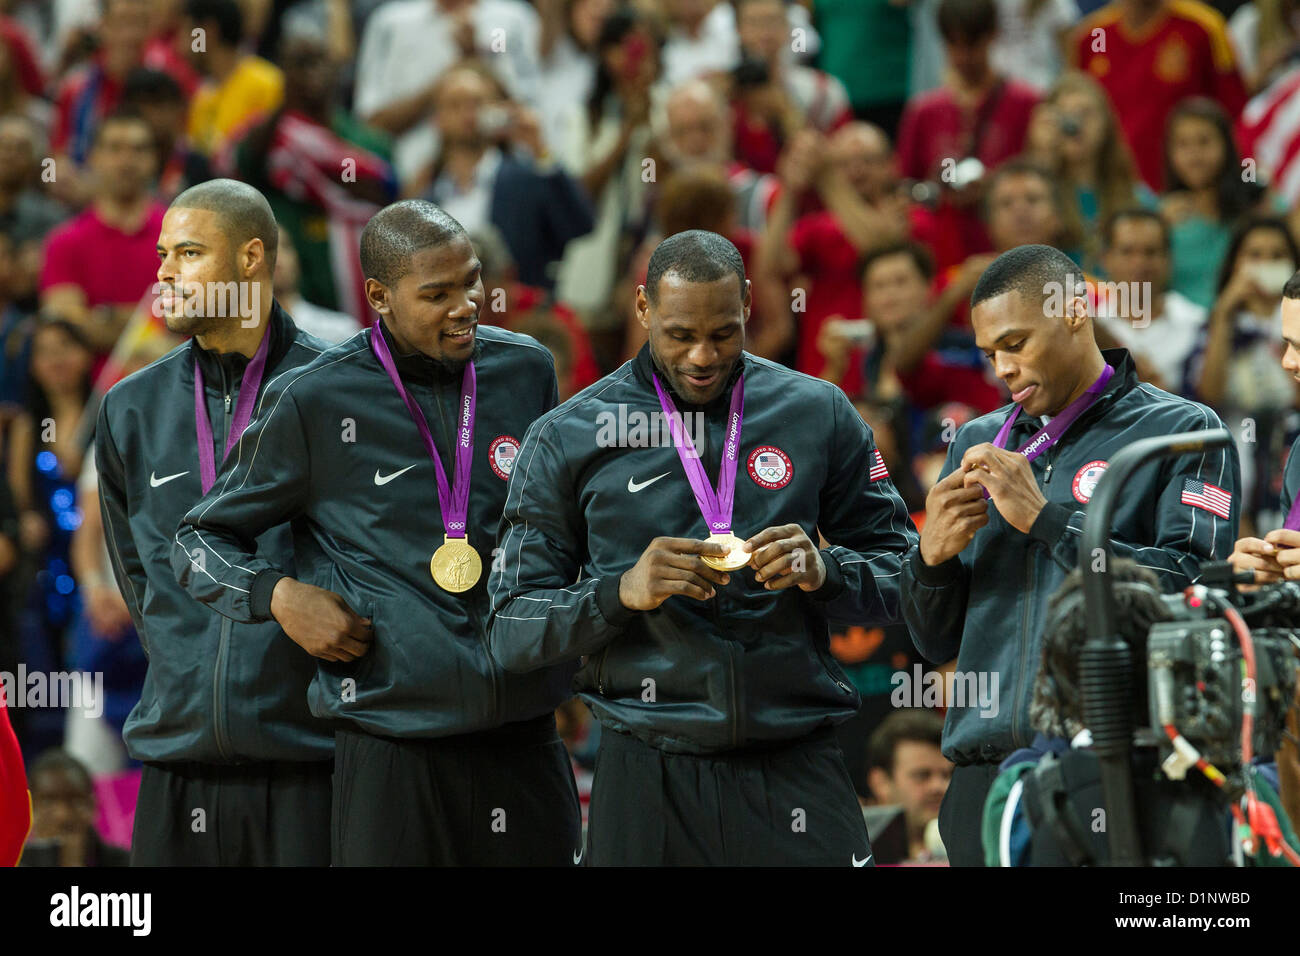 USA remporte la médaille d'or sur l'Espagne dans le basketball masculin aux Jeux Olympiques d'été, Londres 2012 Banque D'Images